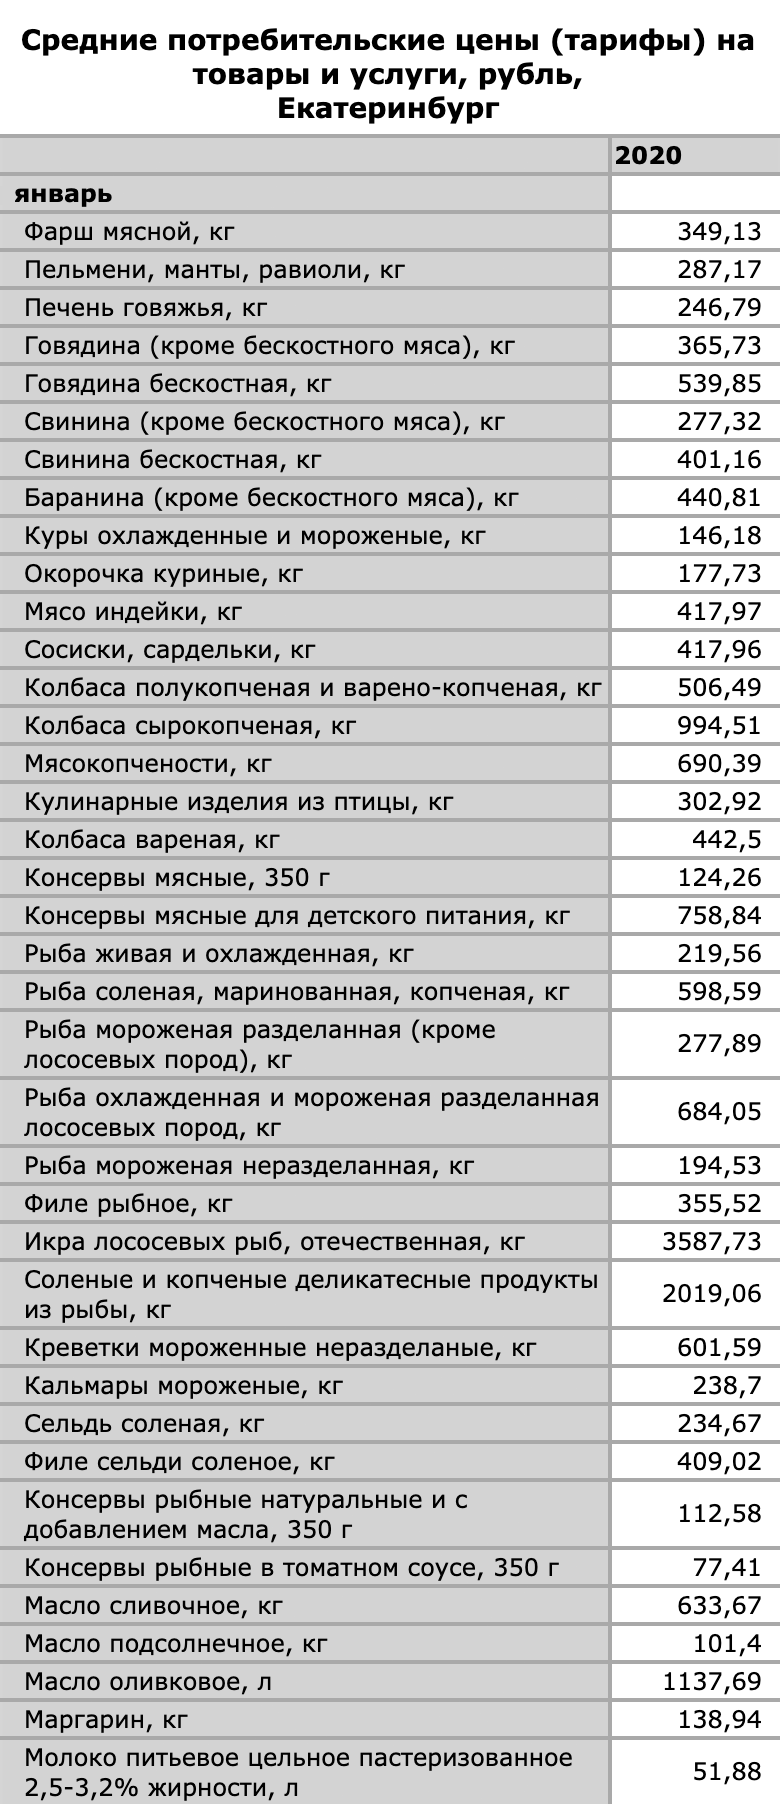 Пример цен на некоторые продукты — это данные за 2020 год в Екатеринбурге